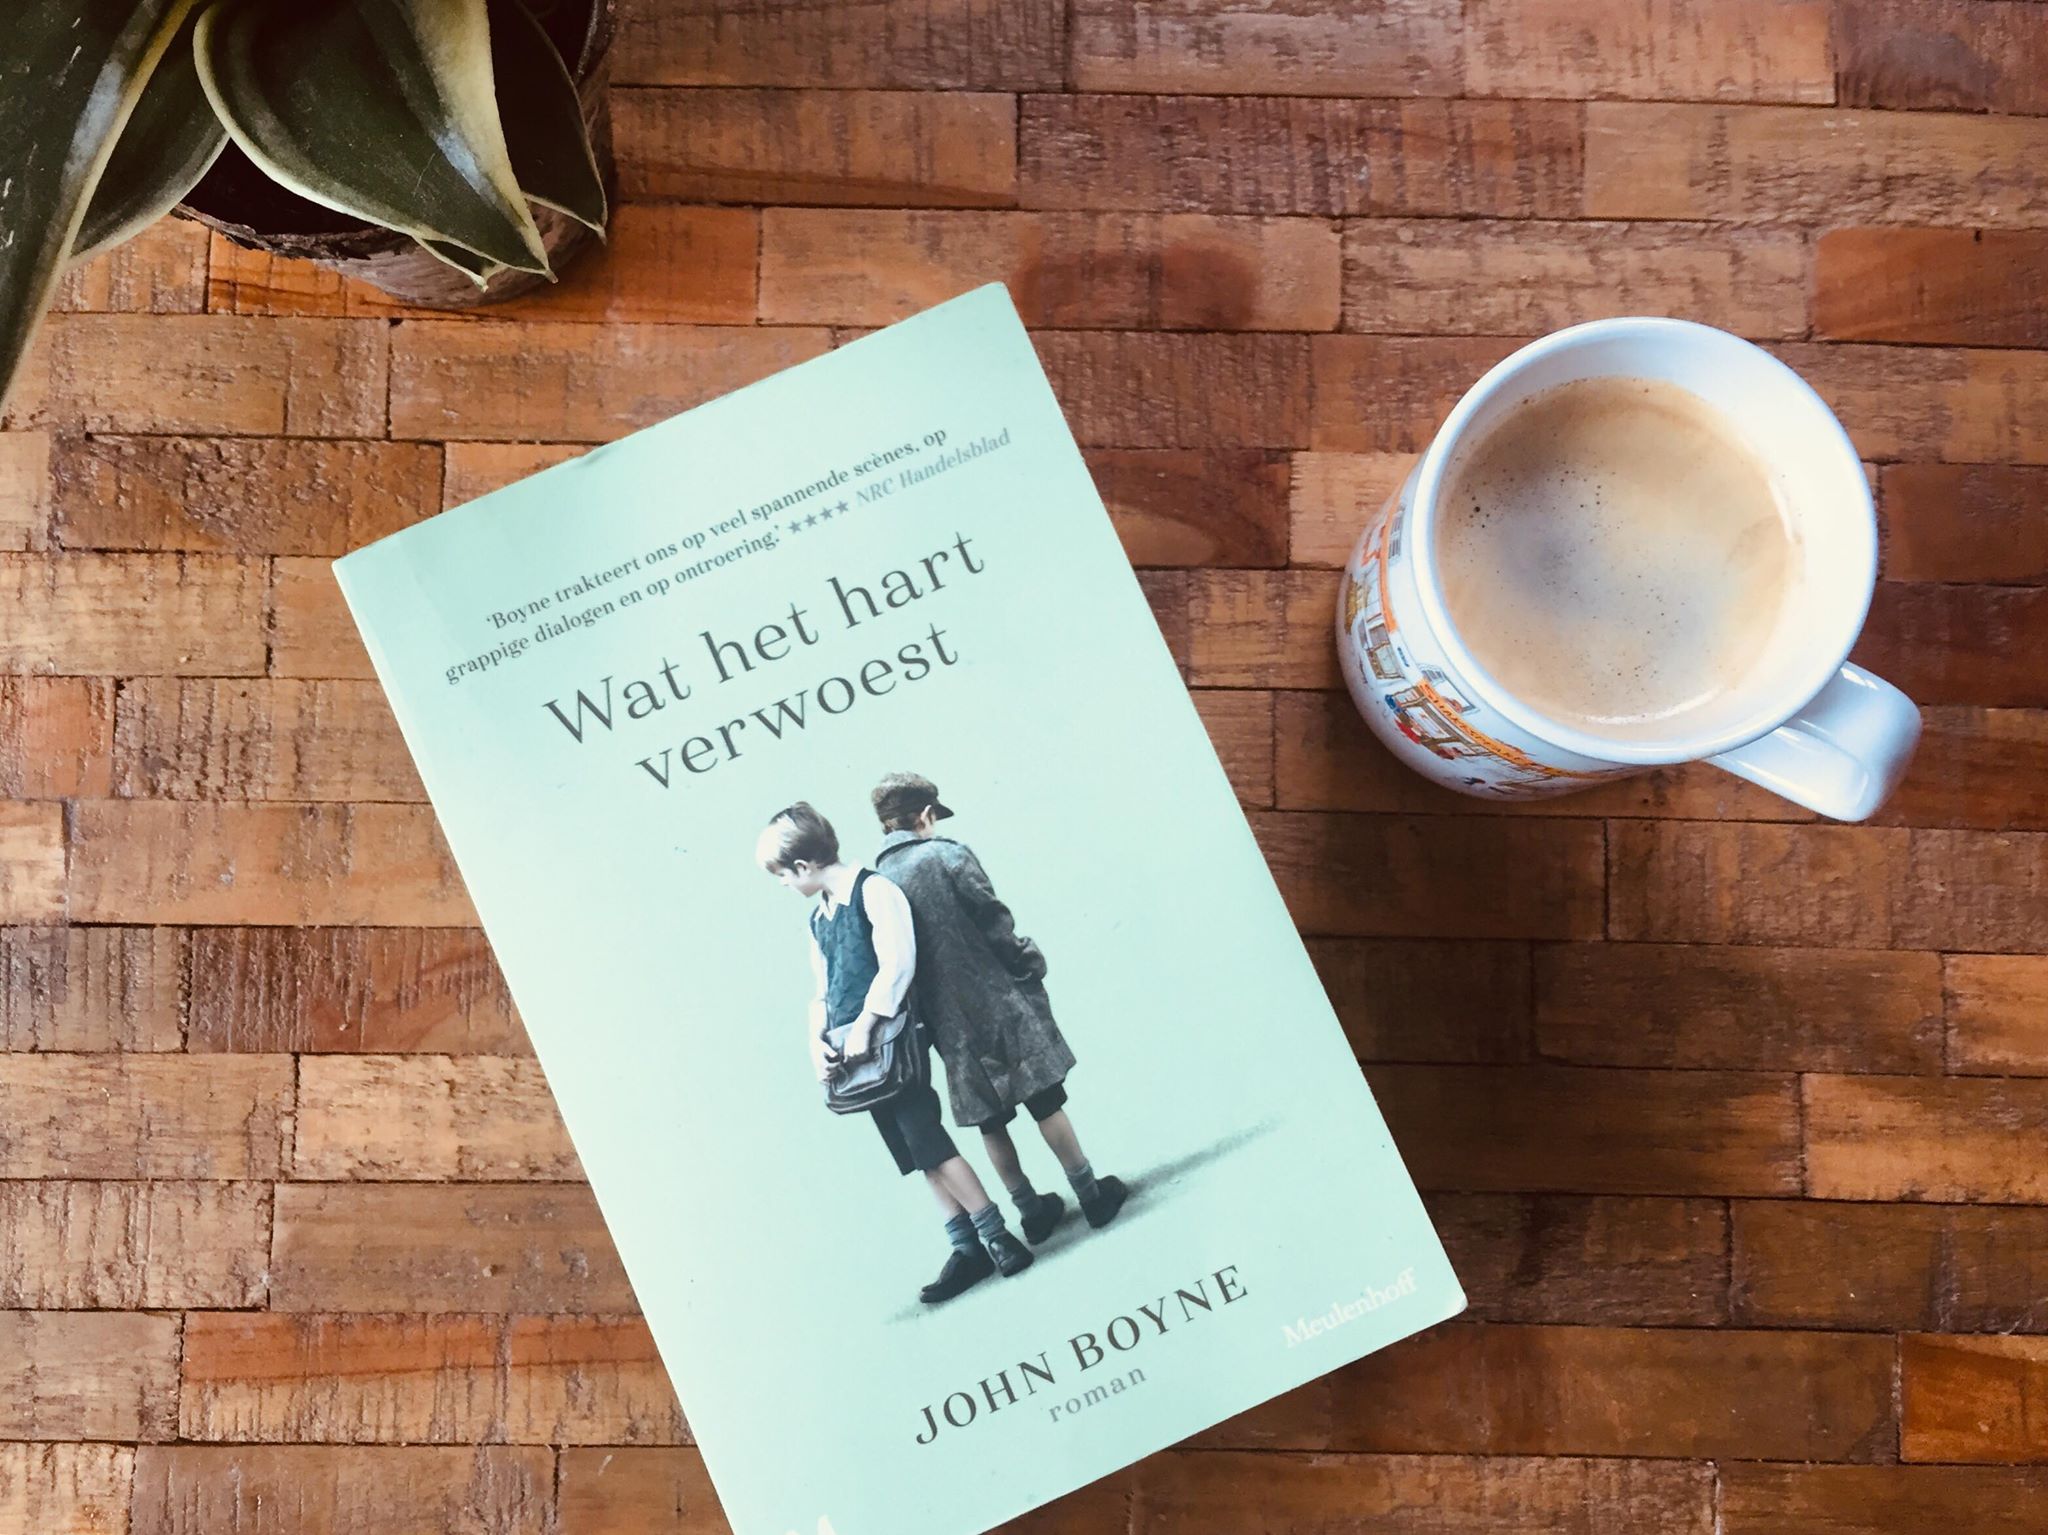 Wat het hart verwoest van John Boyne Recensie by Book Barista